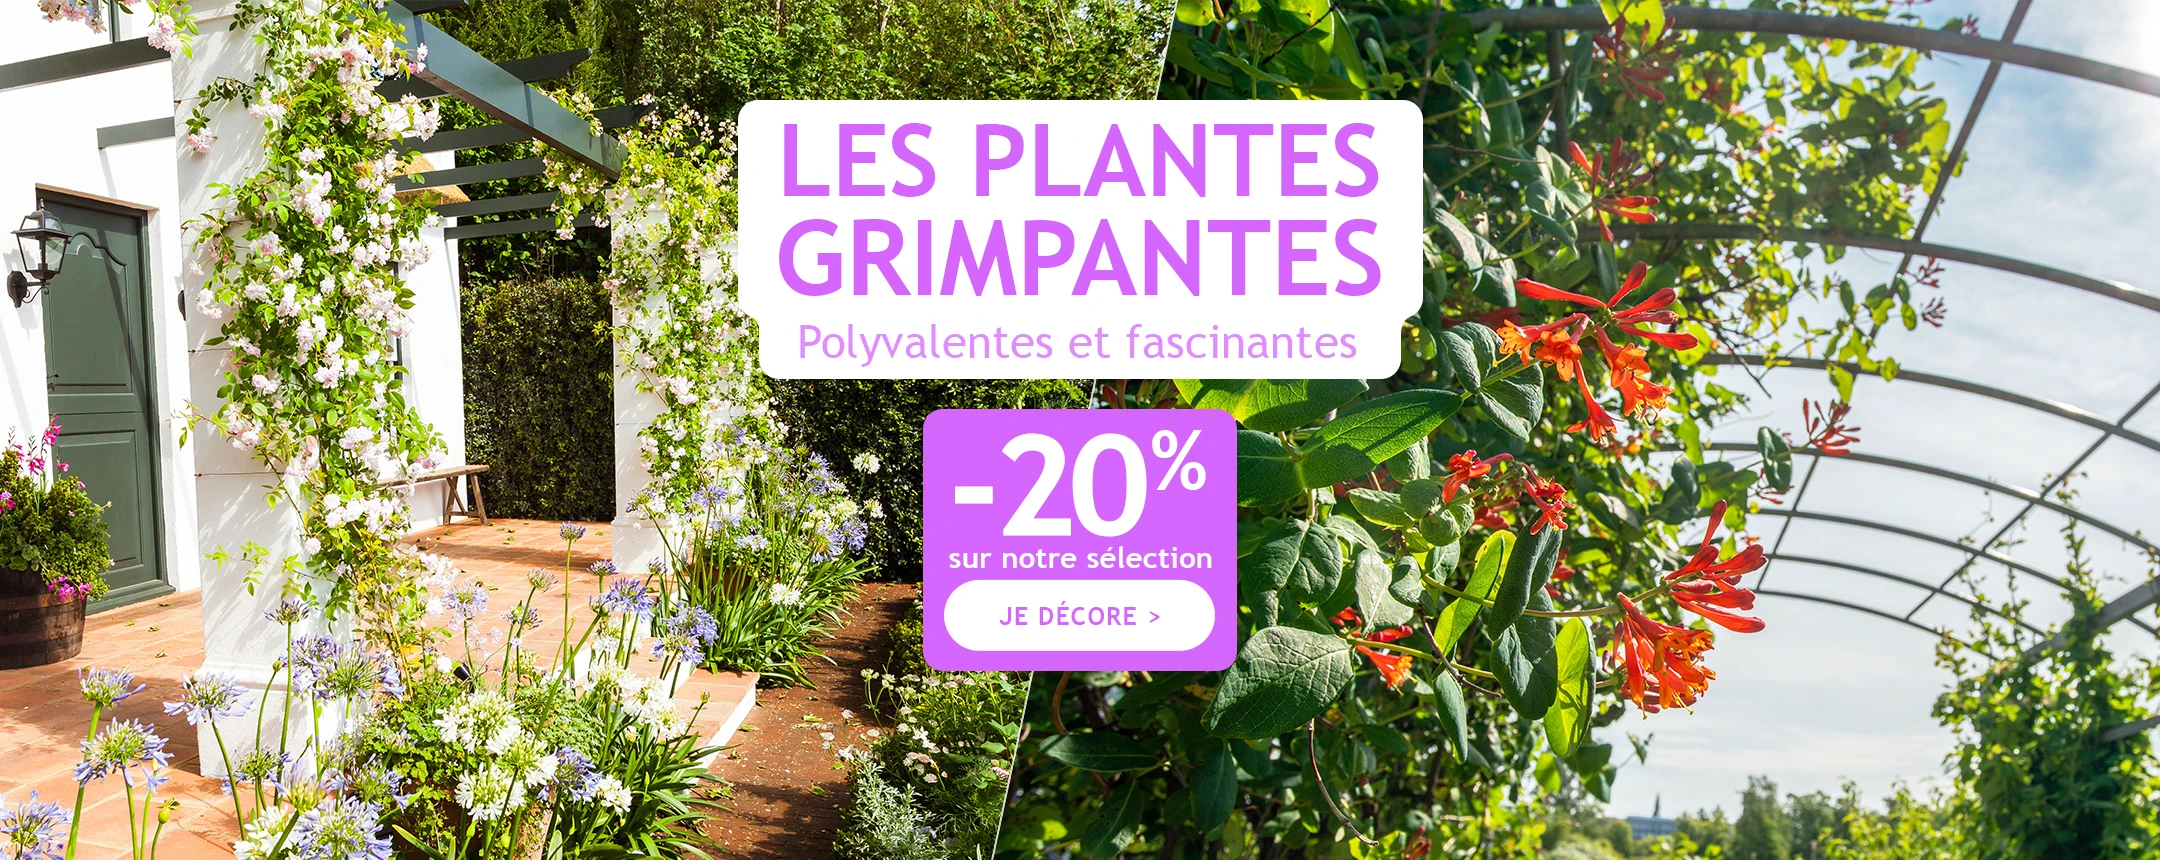 -20% sur notre sélection de plantes grimpantes